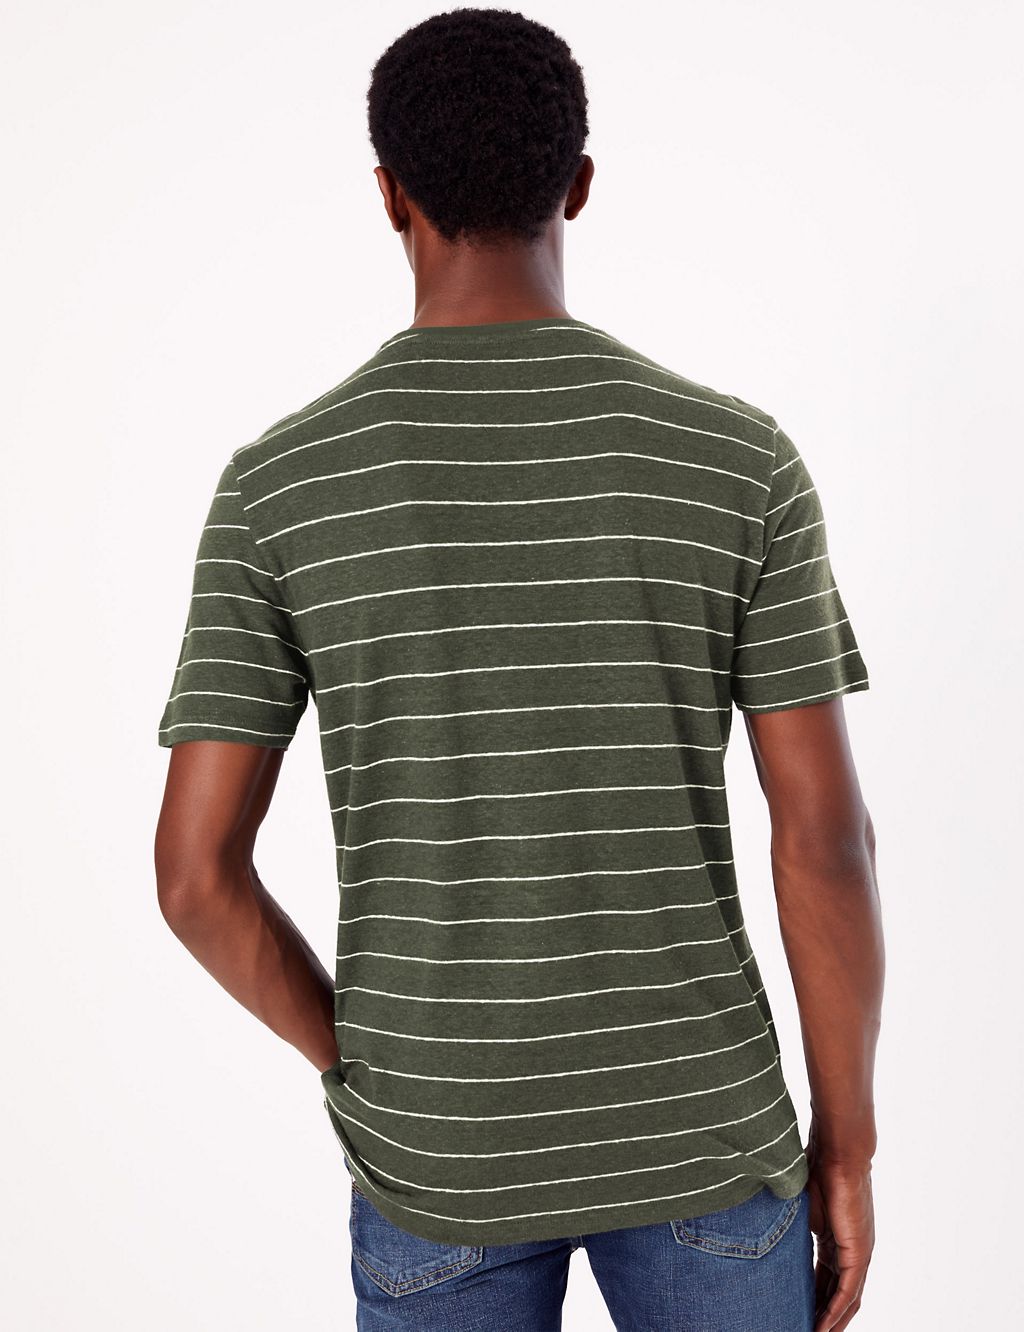 Linen Blend Striped T-Shirt 5 of 5